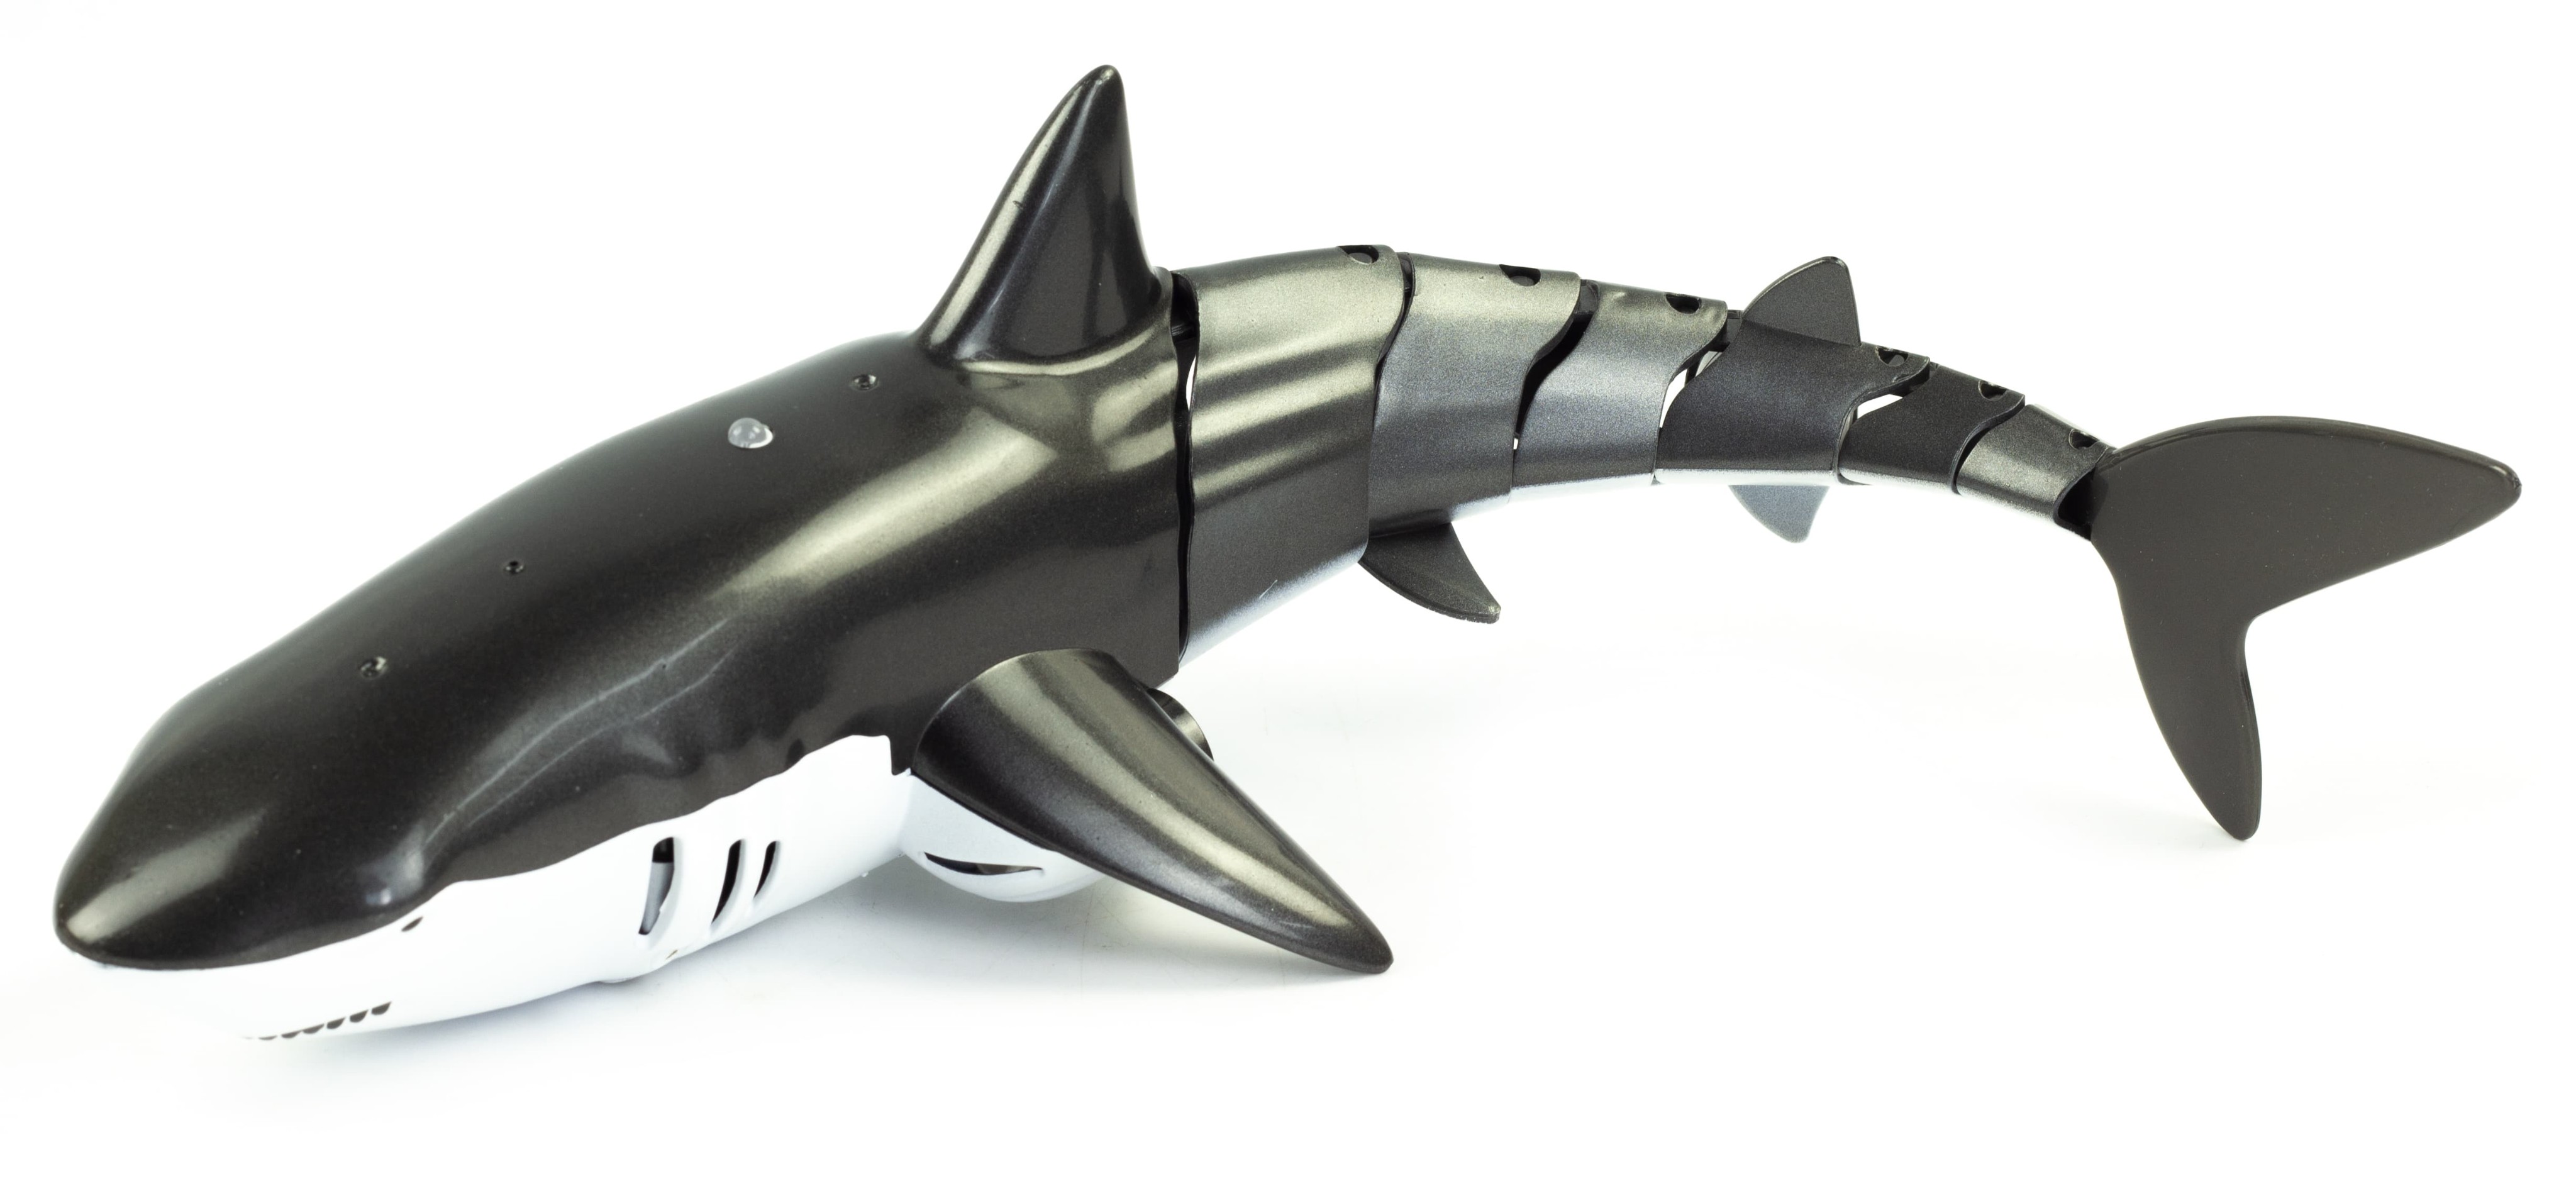 Радиоуправляемая акула 38 см, подвижные элементы, плавает, фонтан / 606-24